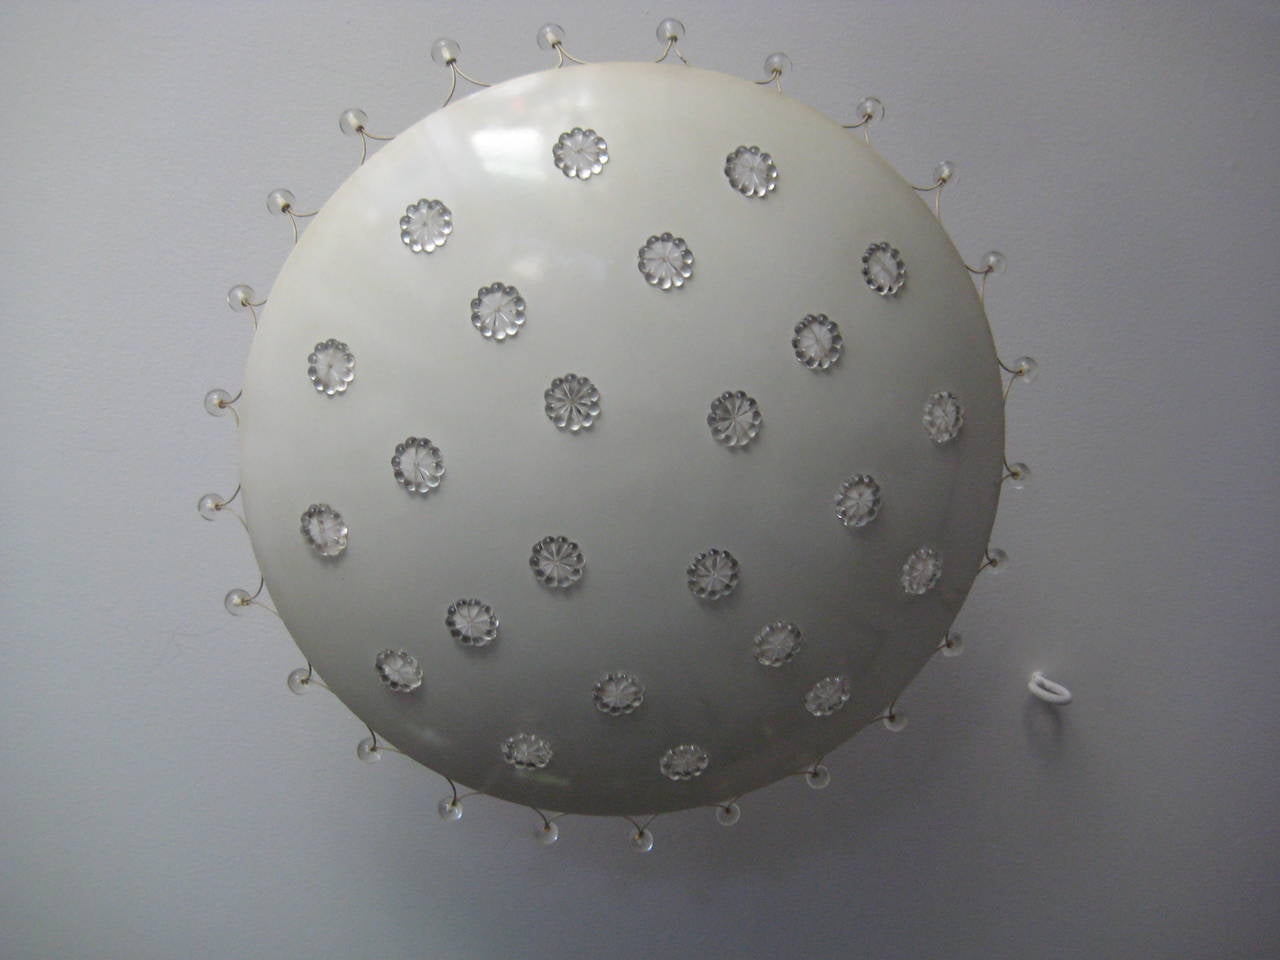 Convex white metal disk with glass decoration providing 
unique decorative details